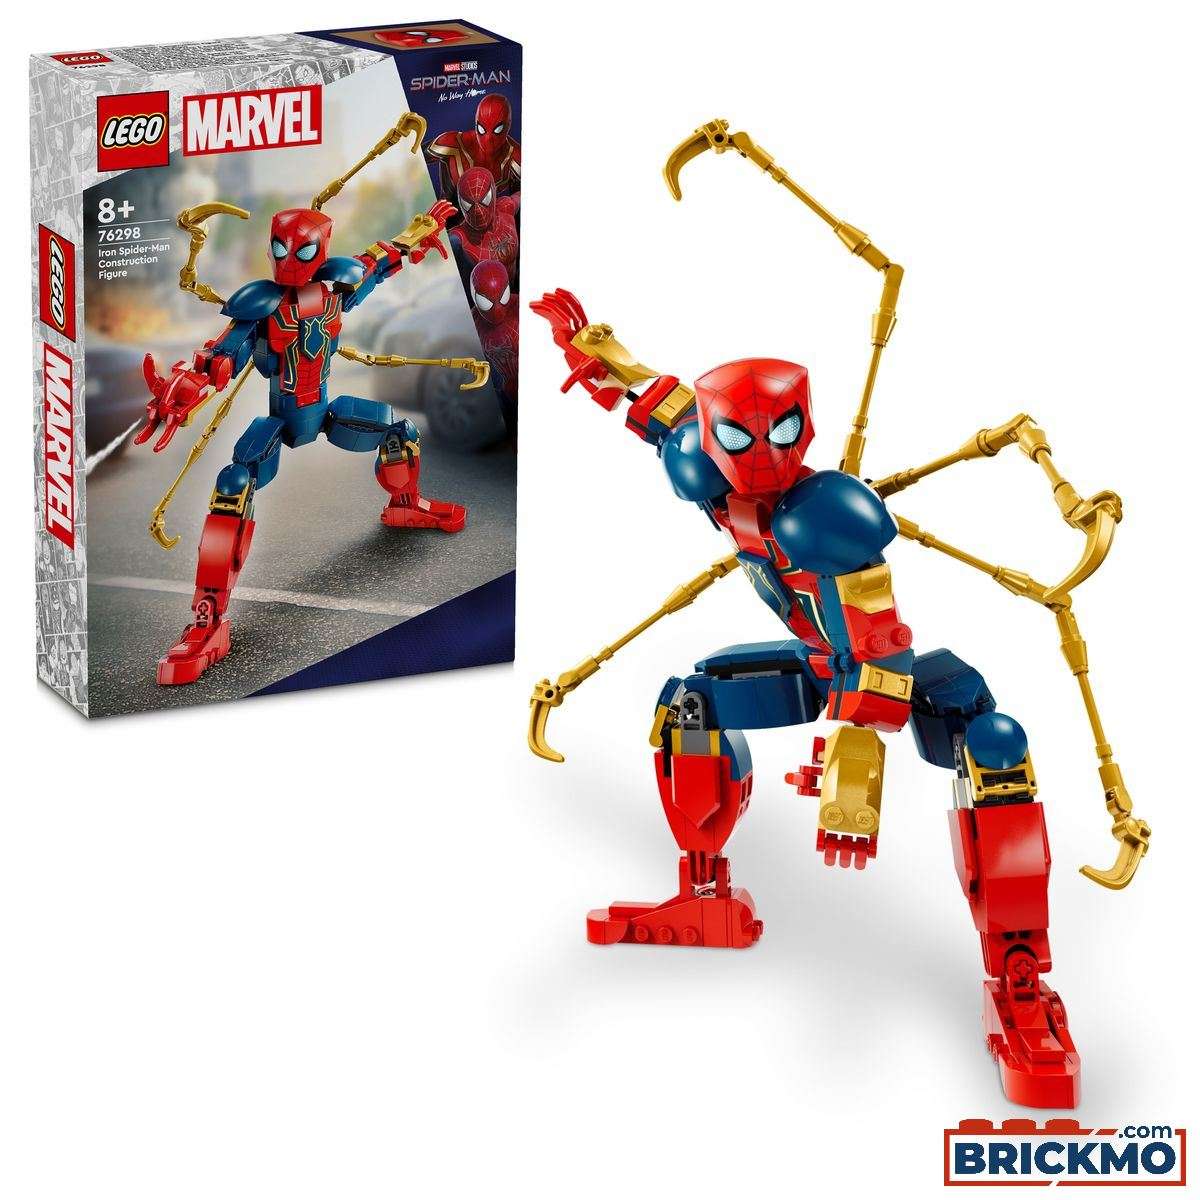 LEGO Marvel Super Heroes 76298 Iron Spider-Man bouwfiguur 76298